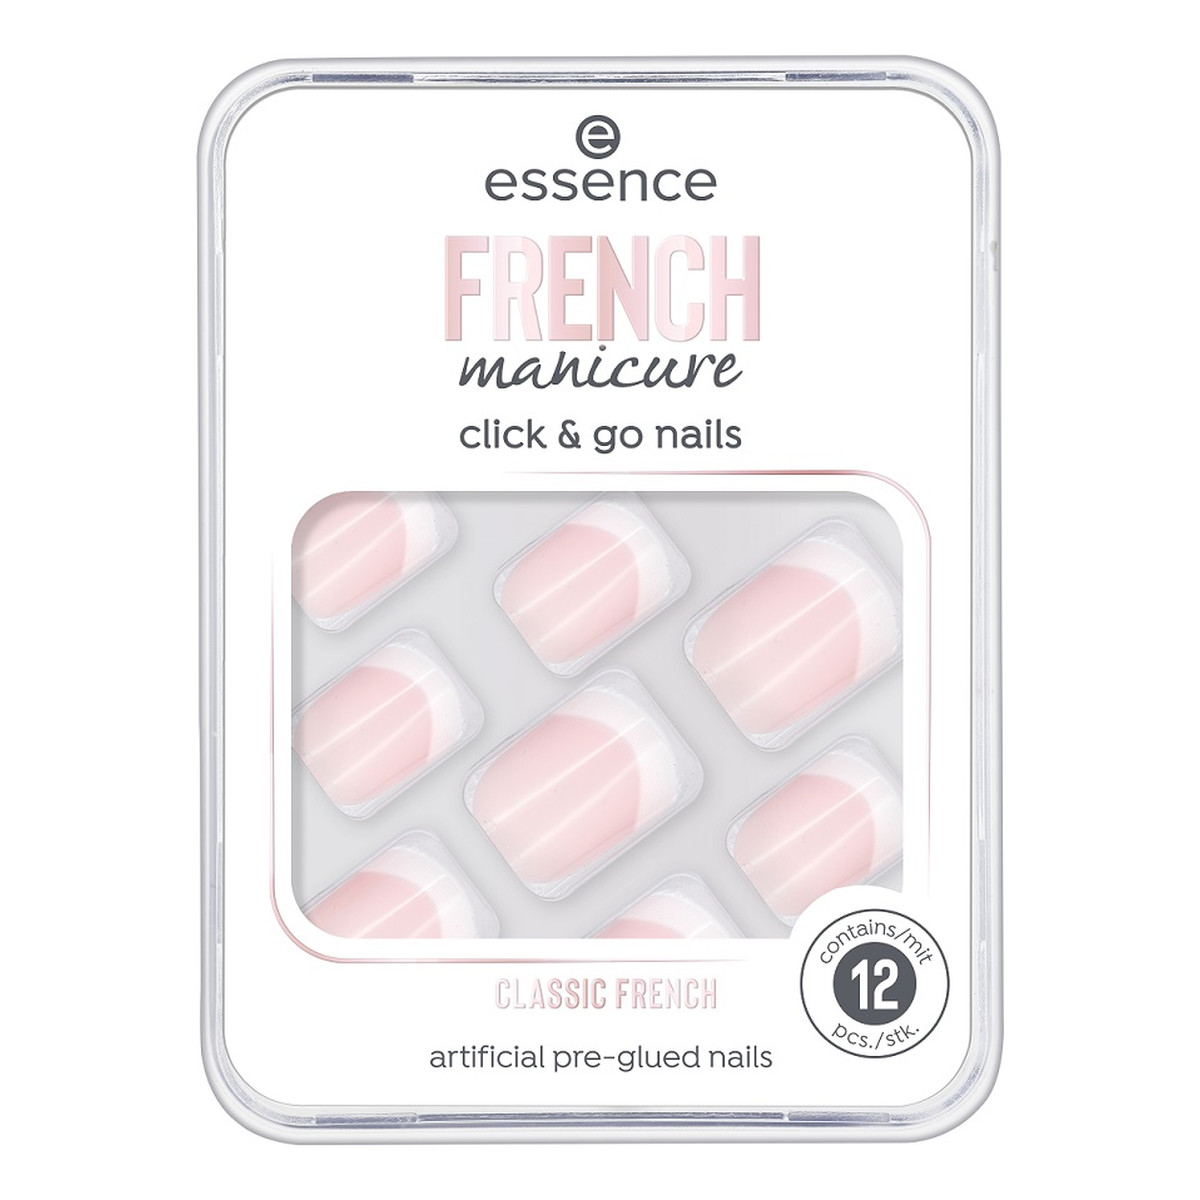 Essence French manicure click & go nails sztuczne paznokcie 01 classic french 12szt